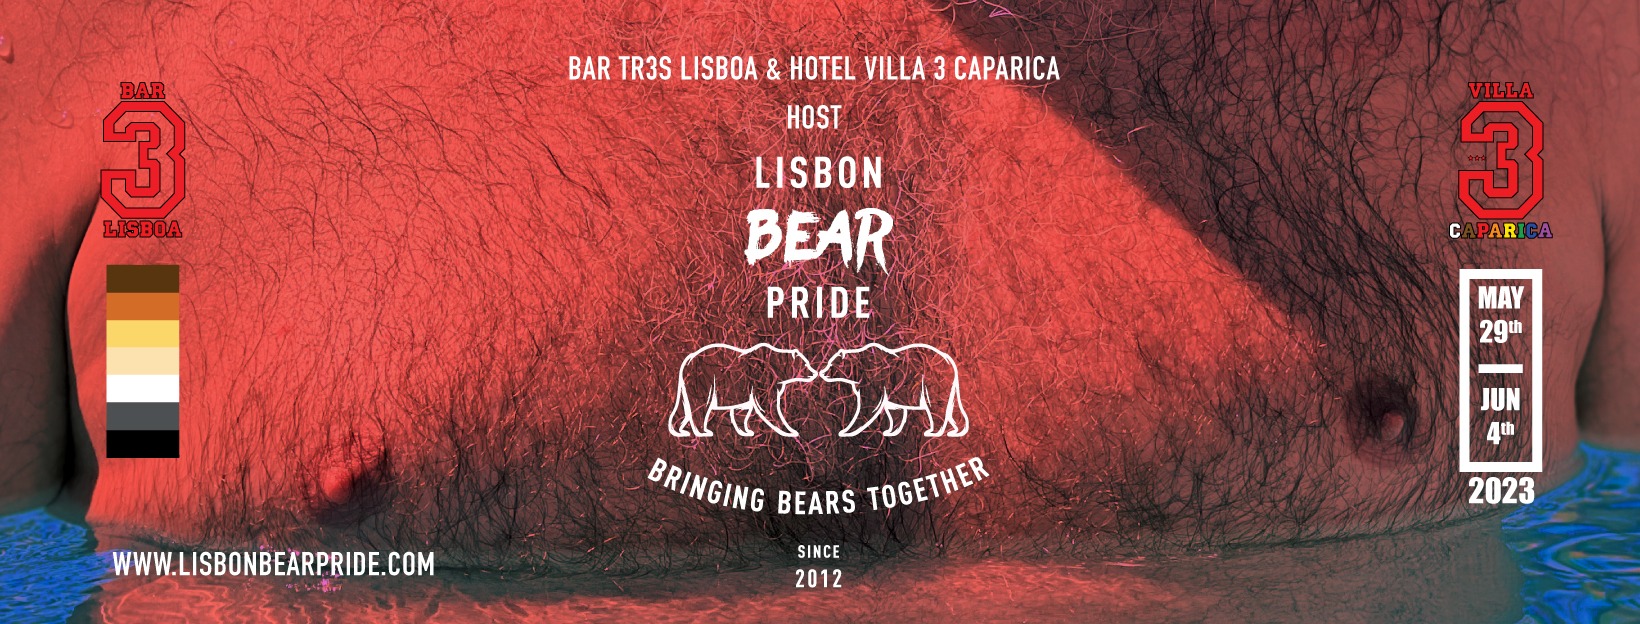 Lisboa orgulho do urso 2024